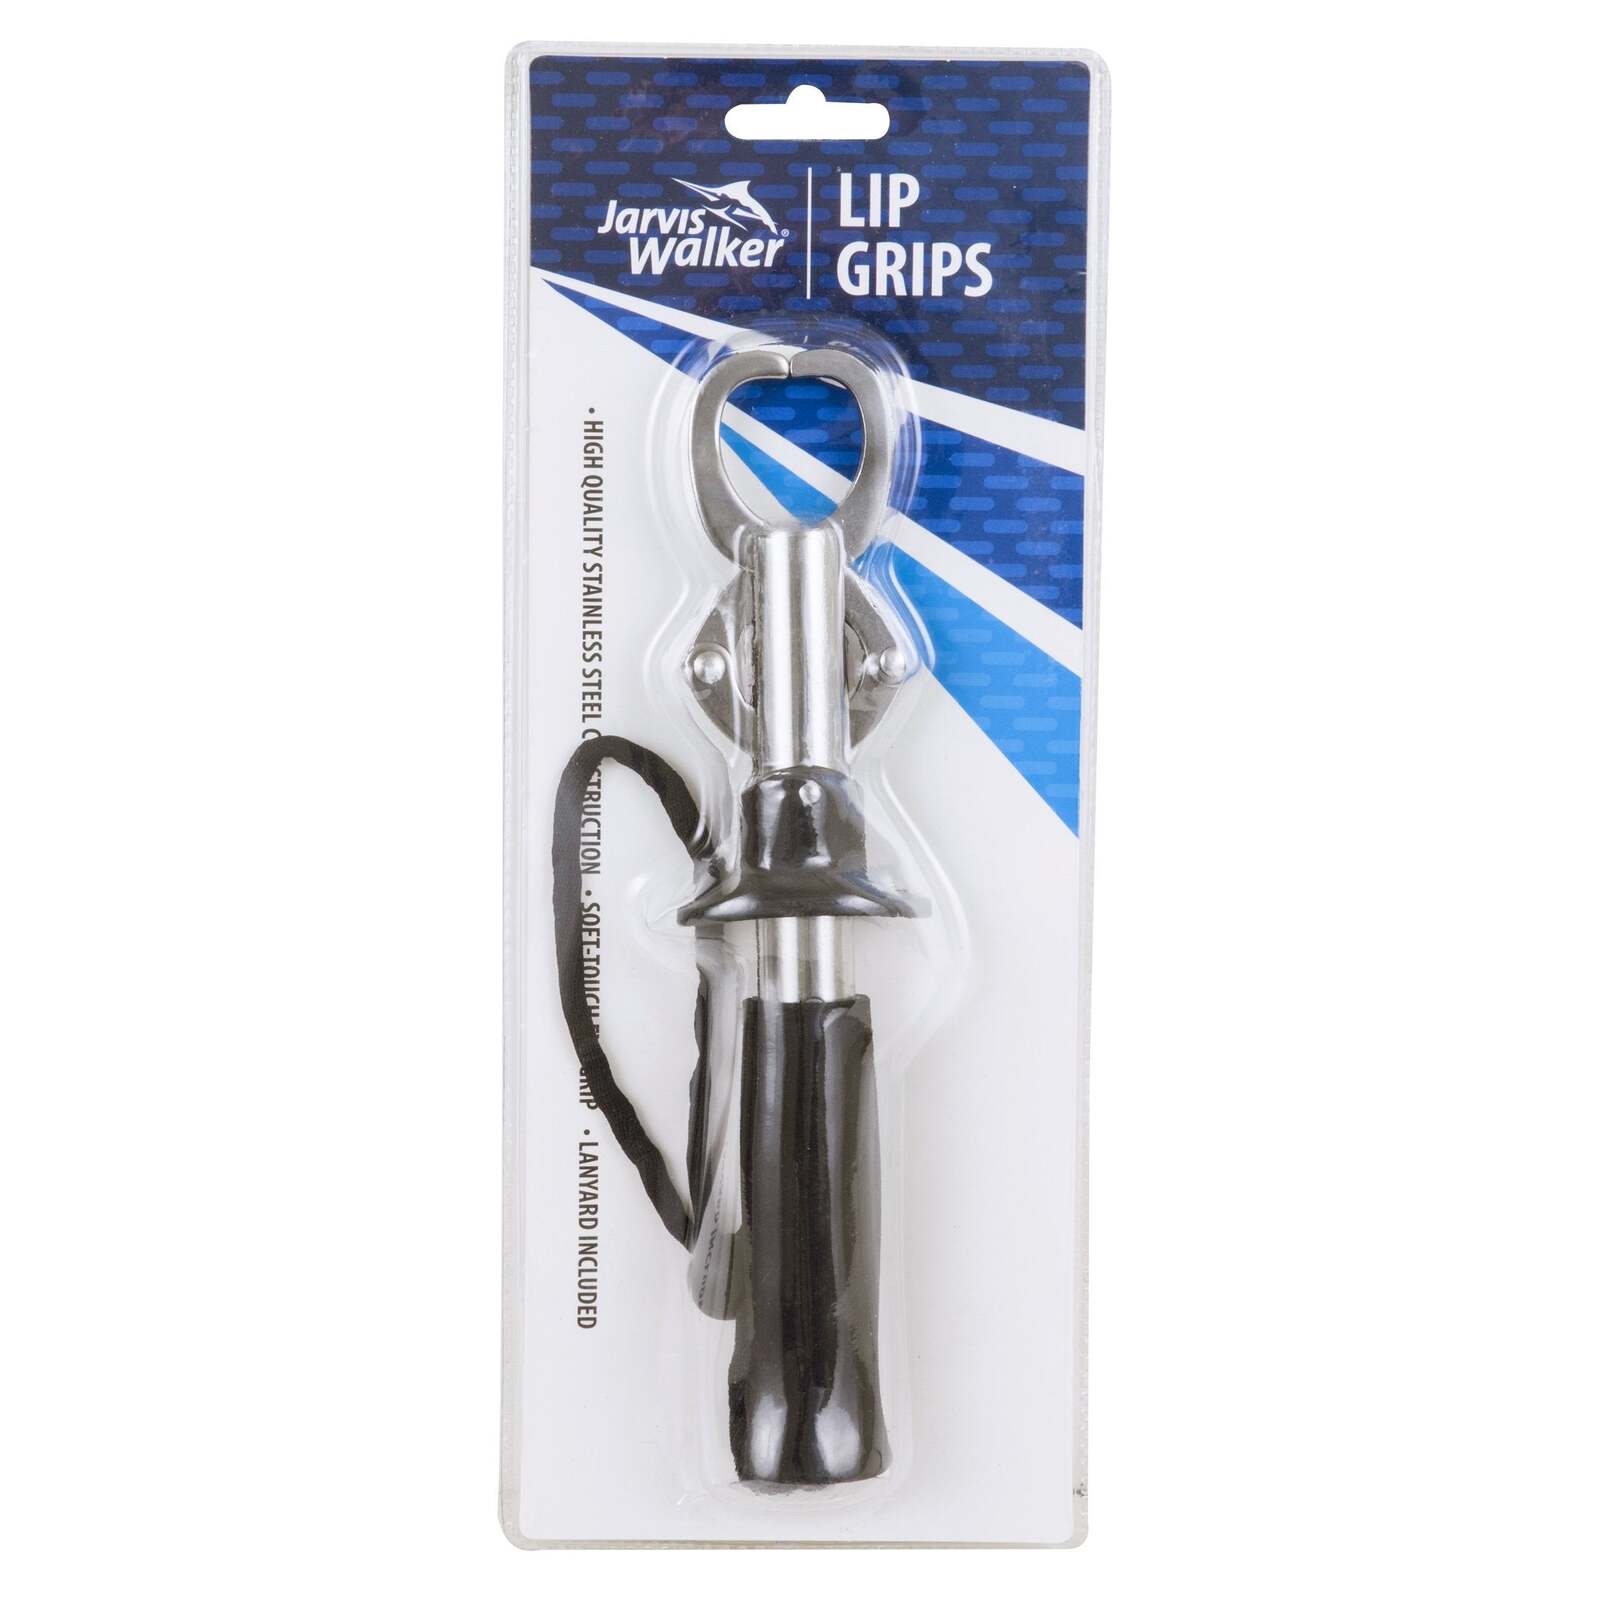 Jarvis Walker 9 Stainless Steel Fishing Lip Grip Tool